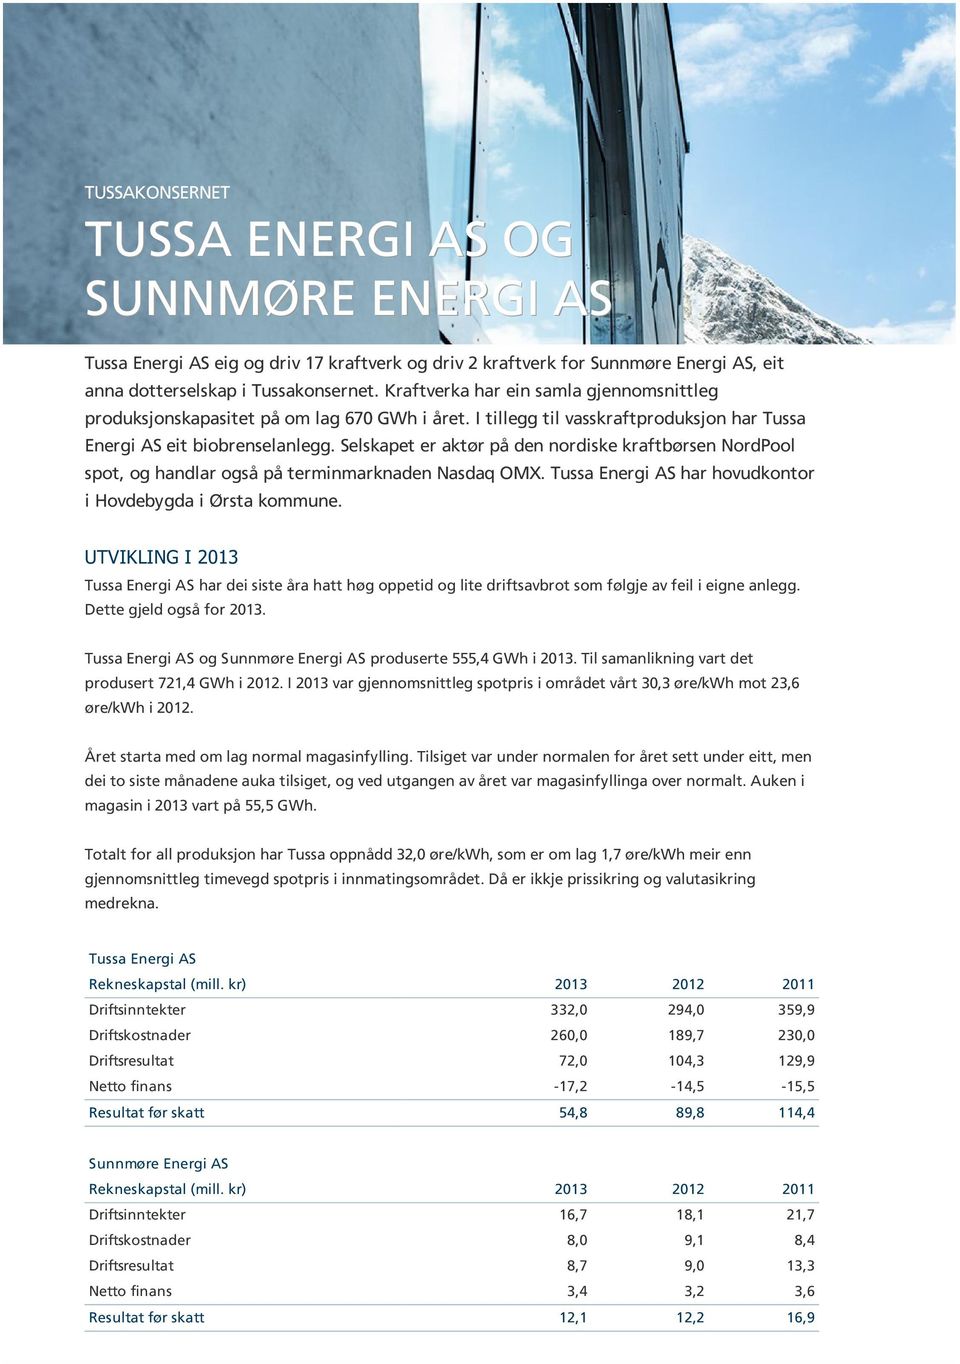 Selskapet er aktør på den nordiske kraftbørsen NordPool spot, og handlar også på terminmarknaden Nasdaq OMX. Tussa Energi AS har hovudkontor i Hovdebygda i Ørsta kommune.